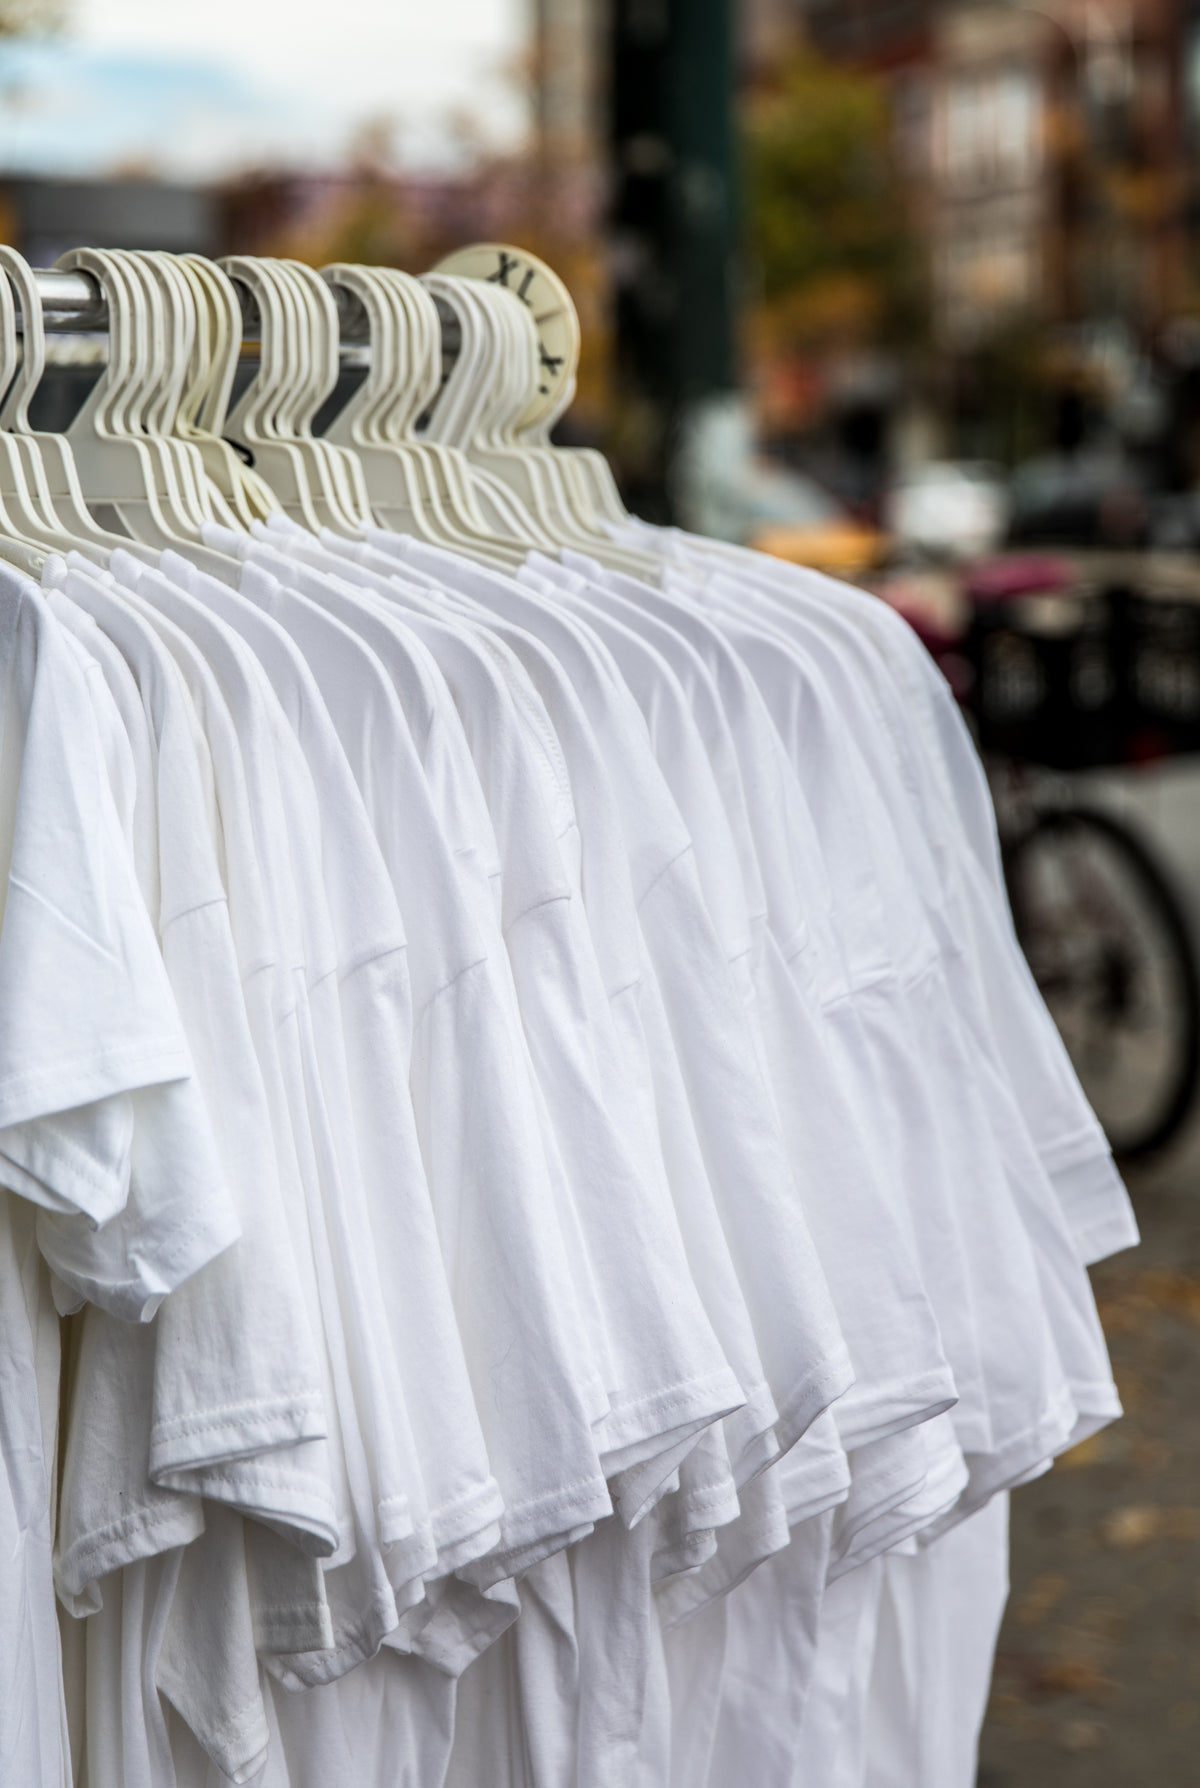 商店衣架上简单的白衬衫